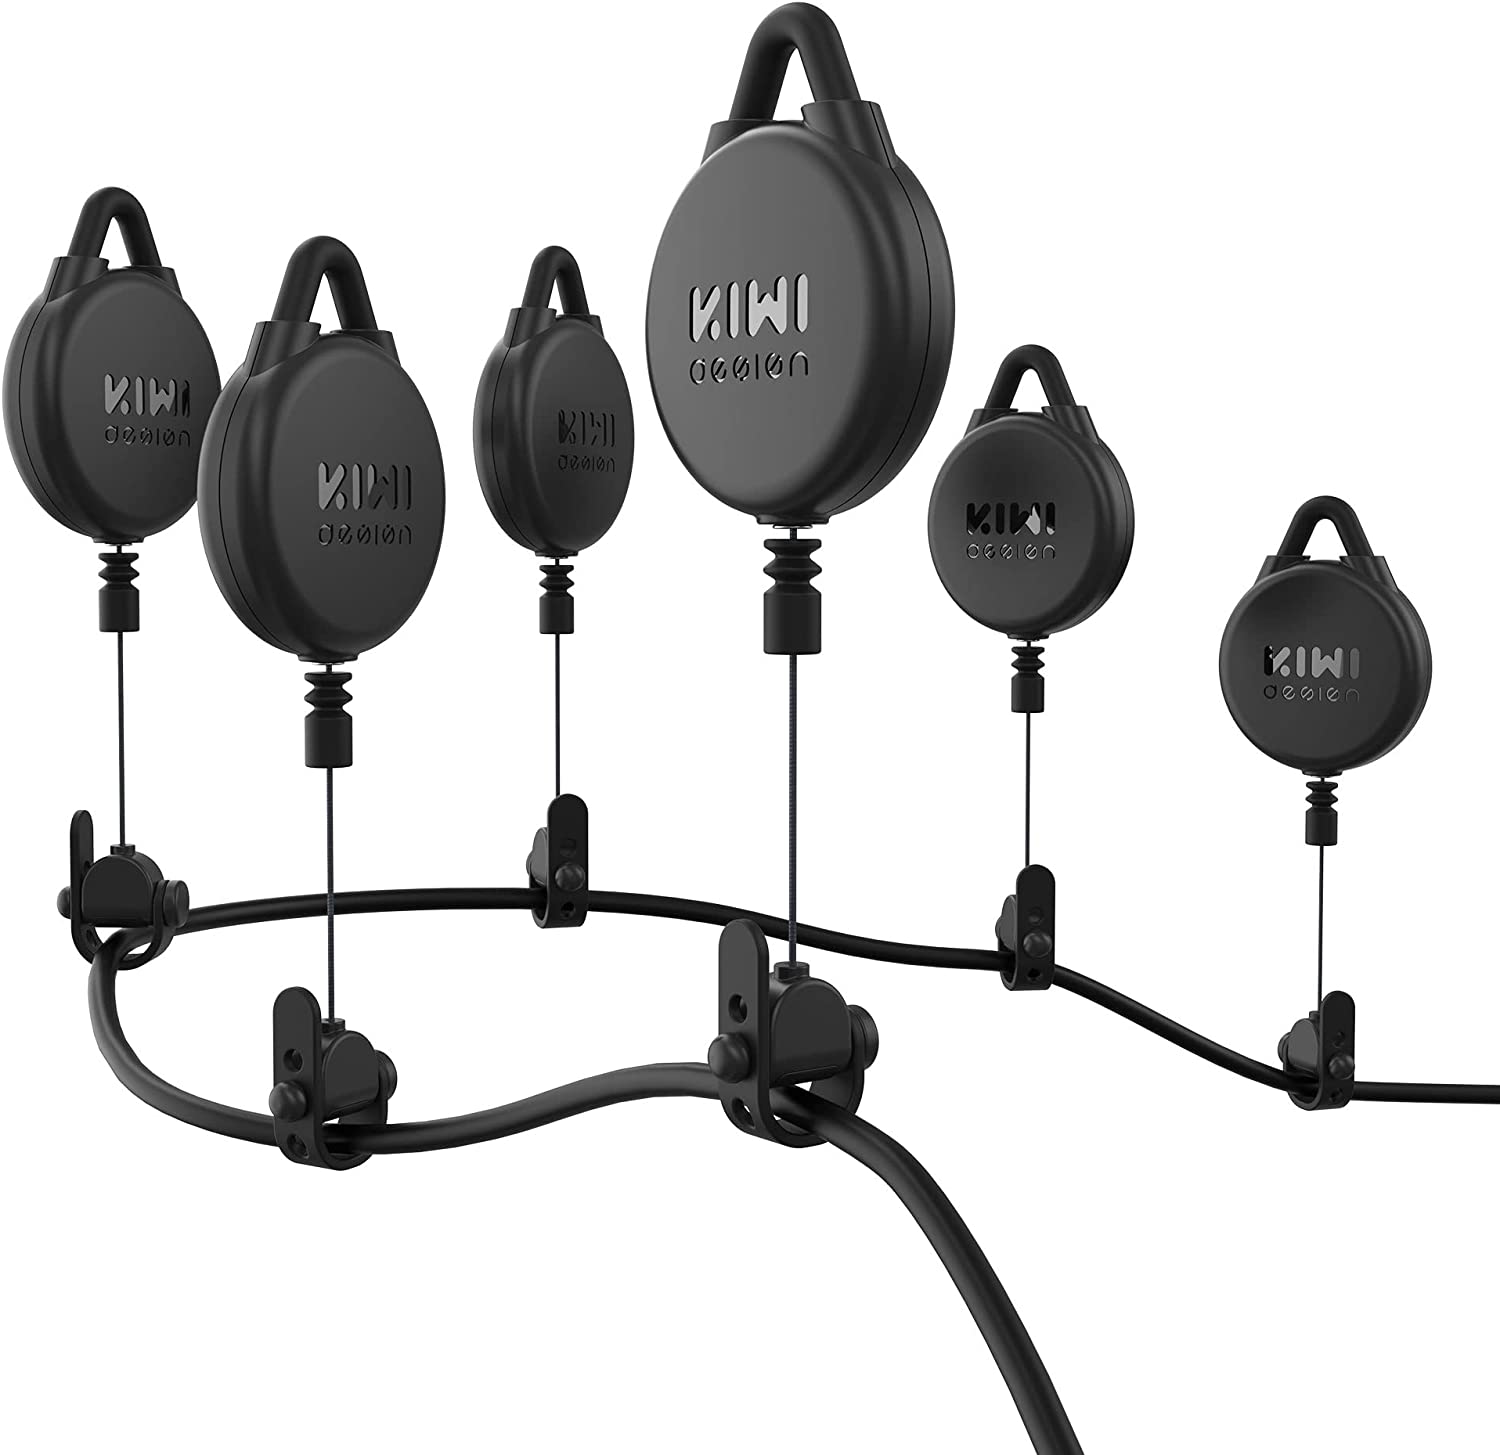 مدیریت کابل واقعیت مجازی مدل KIWI design VR Cable Management Pro Version - ارسال ۱۰ الی ۱۵ روز کاری